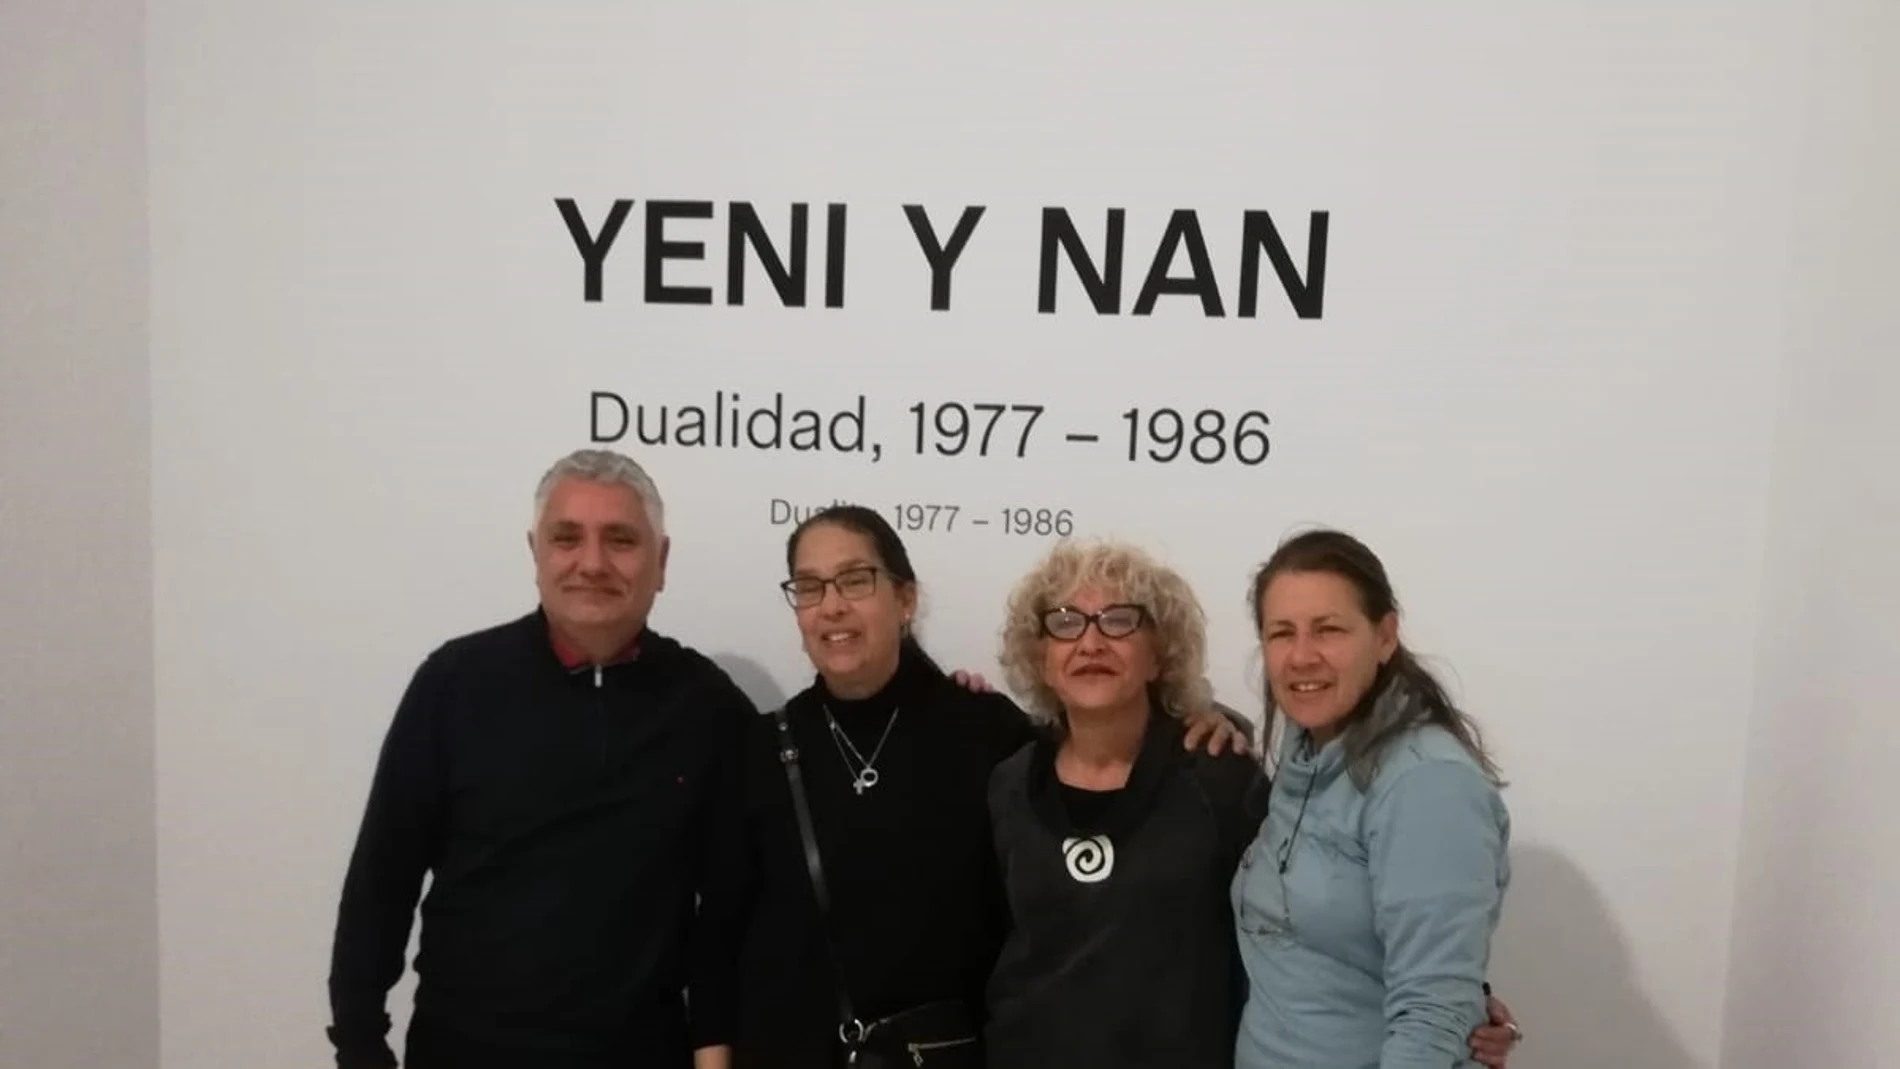 El CAAC recupera a Yeni y Nan, precursoras en Venezuela